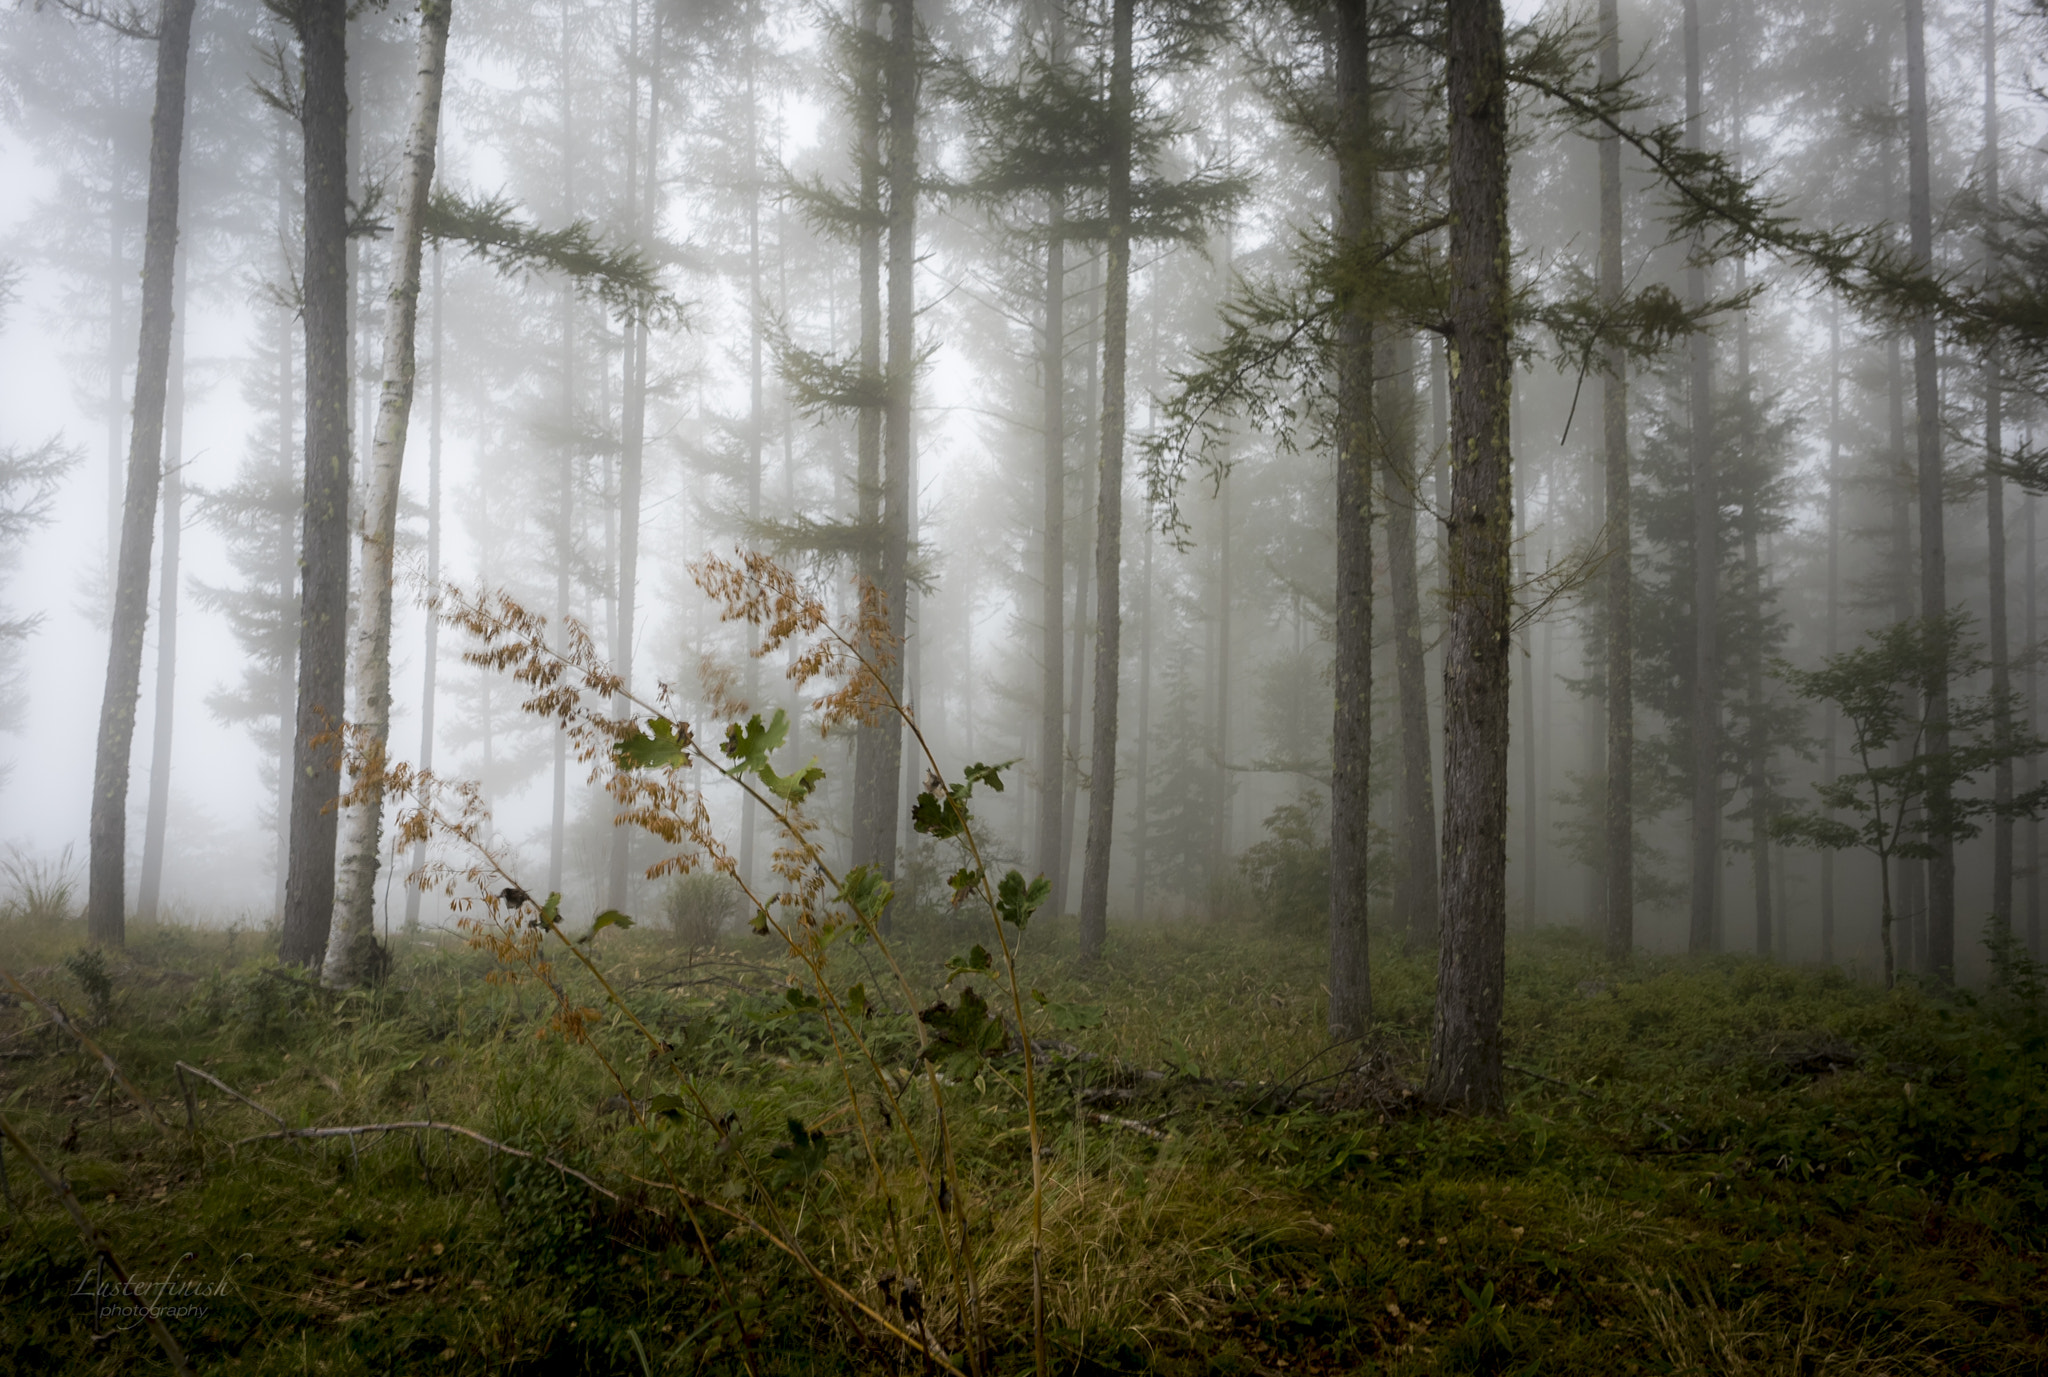 Nikon D810 + Nikon AF-S Nikkor 24mm F1.8G ED sample photo. Forest in the fog photography